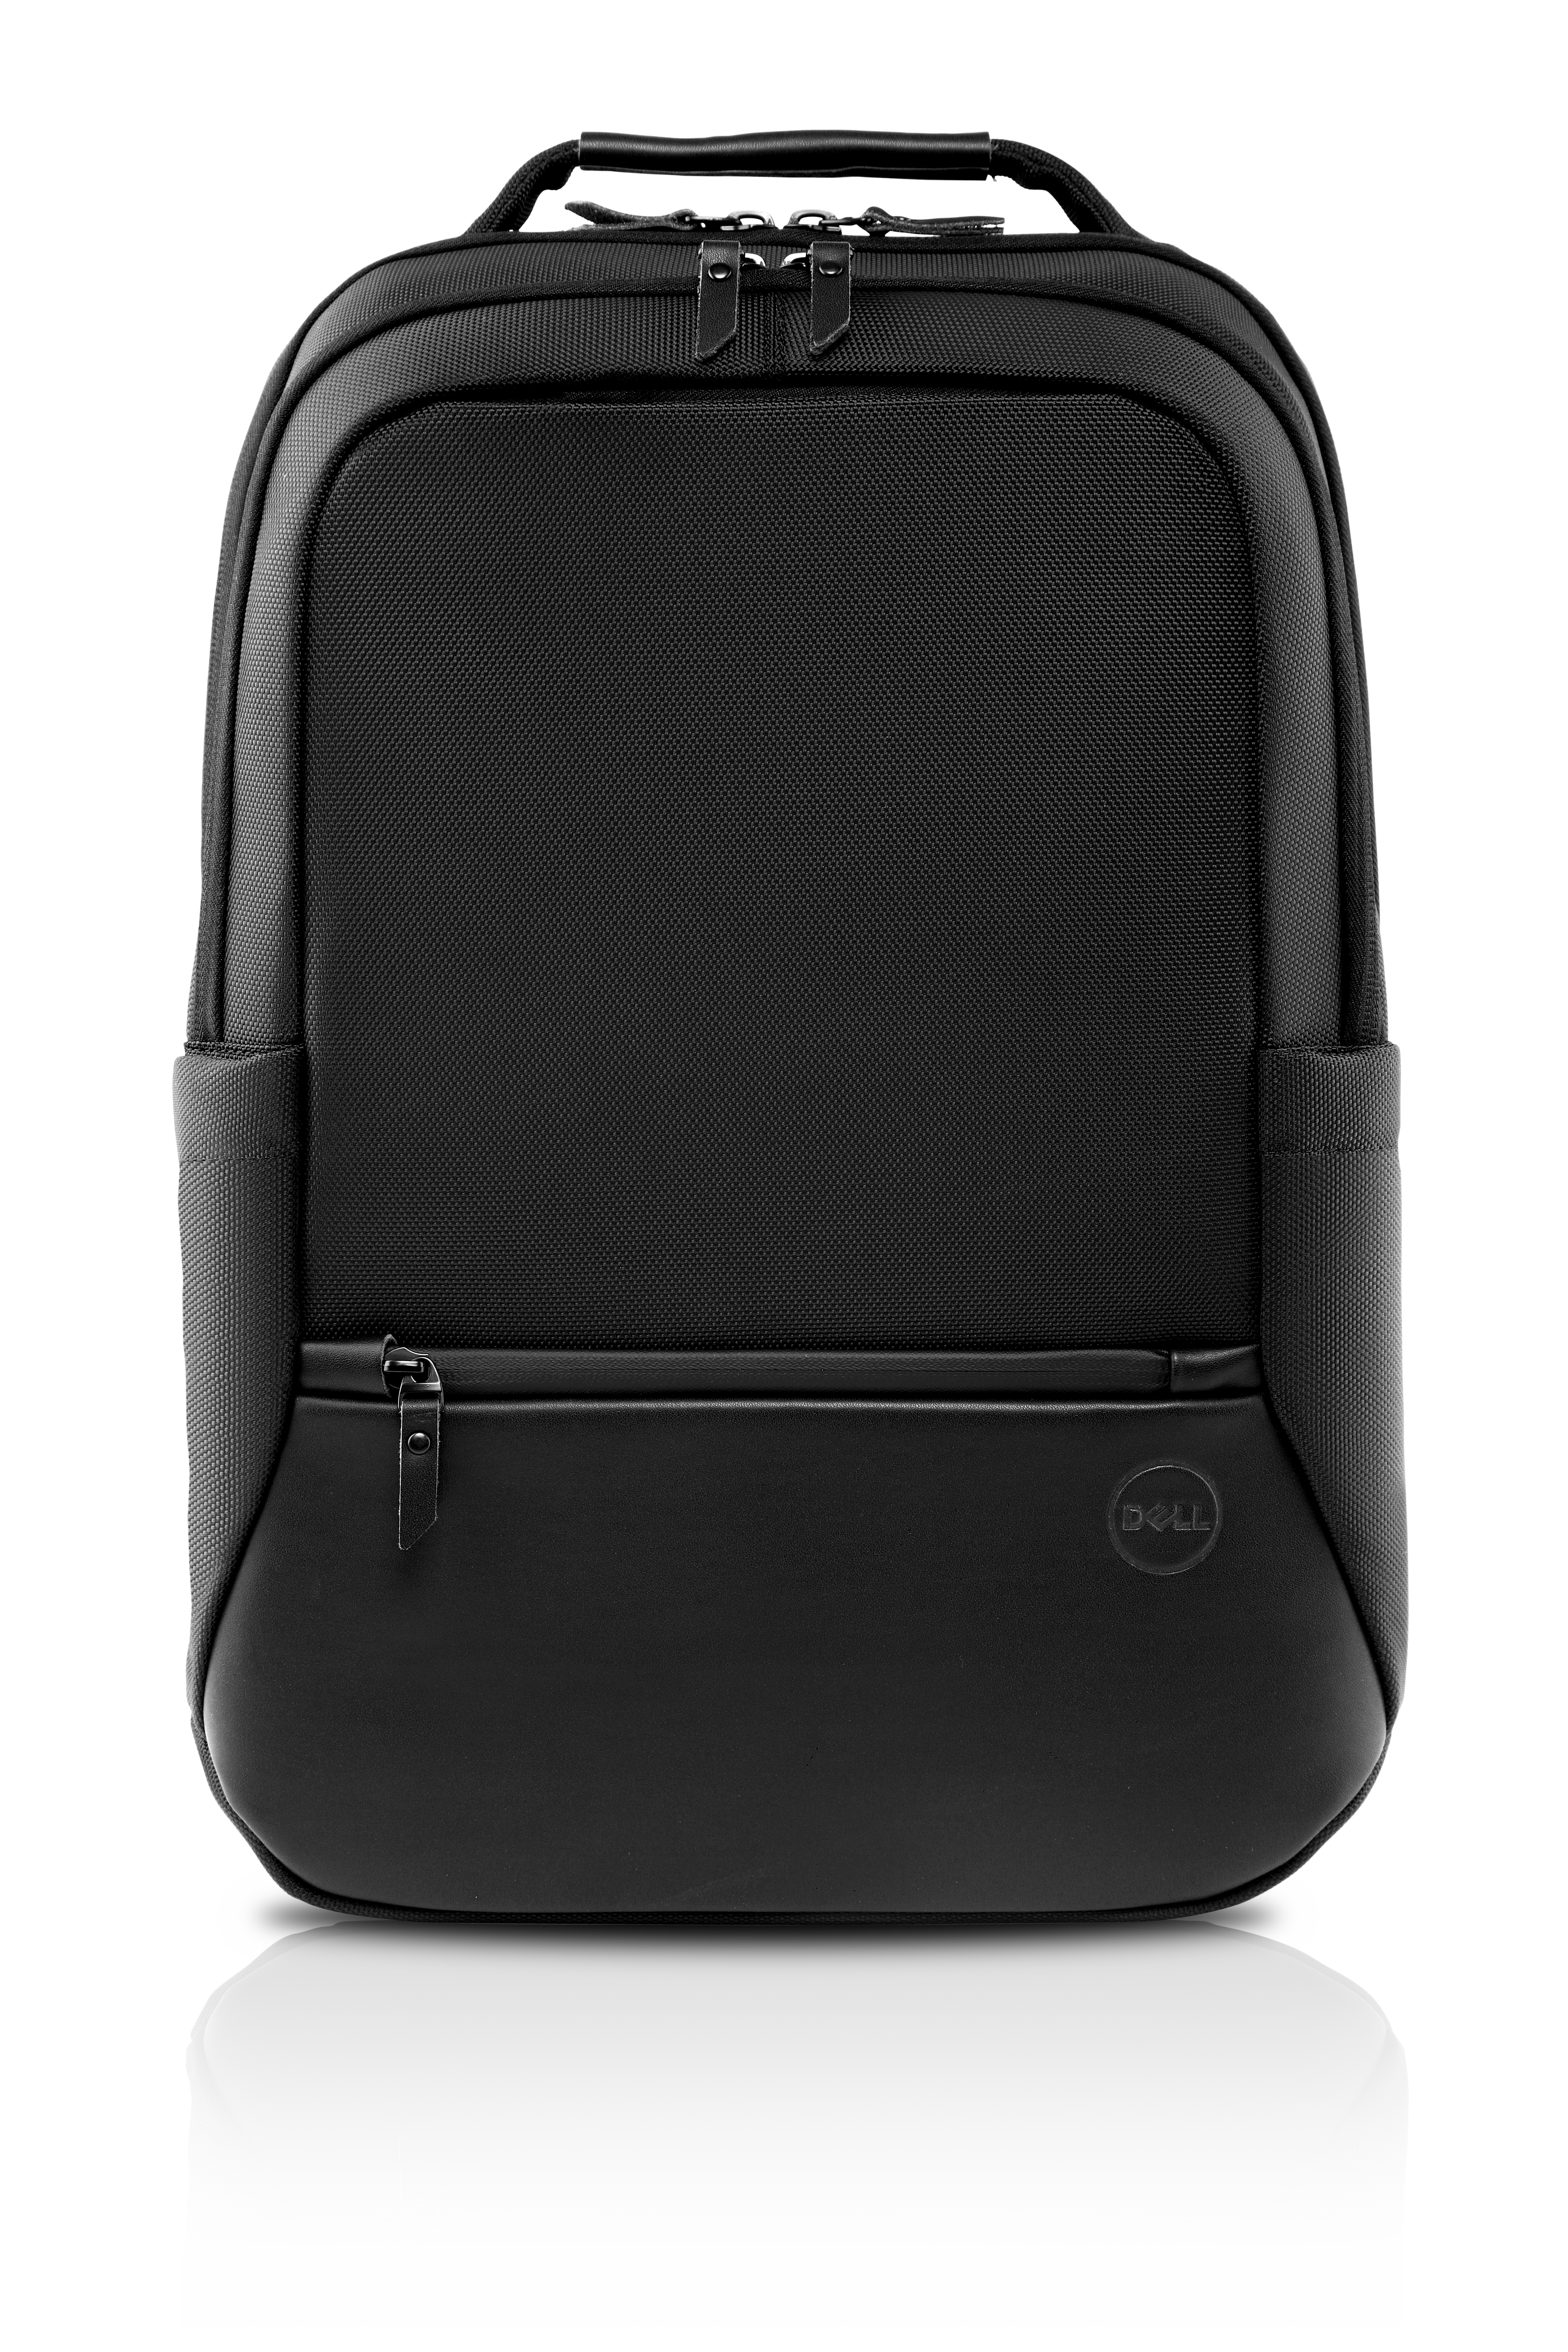 Dell Premier Backpack 15 - Notebook-Rucksack - 38.1 cm (15")